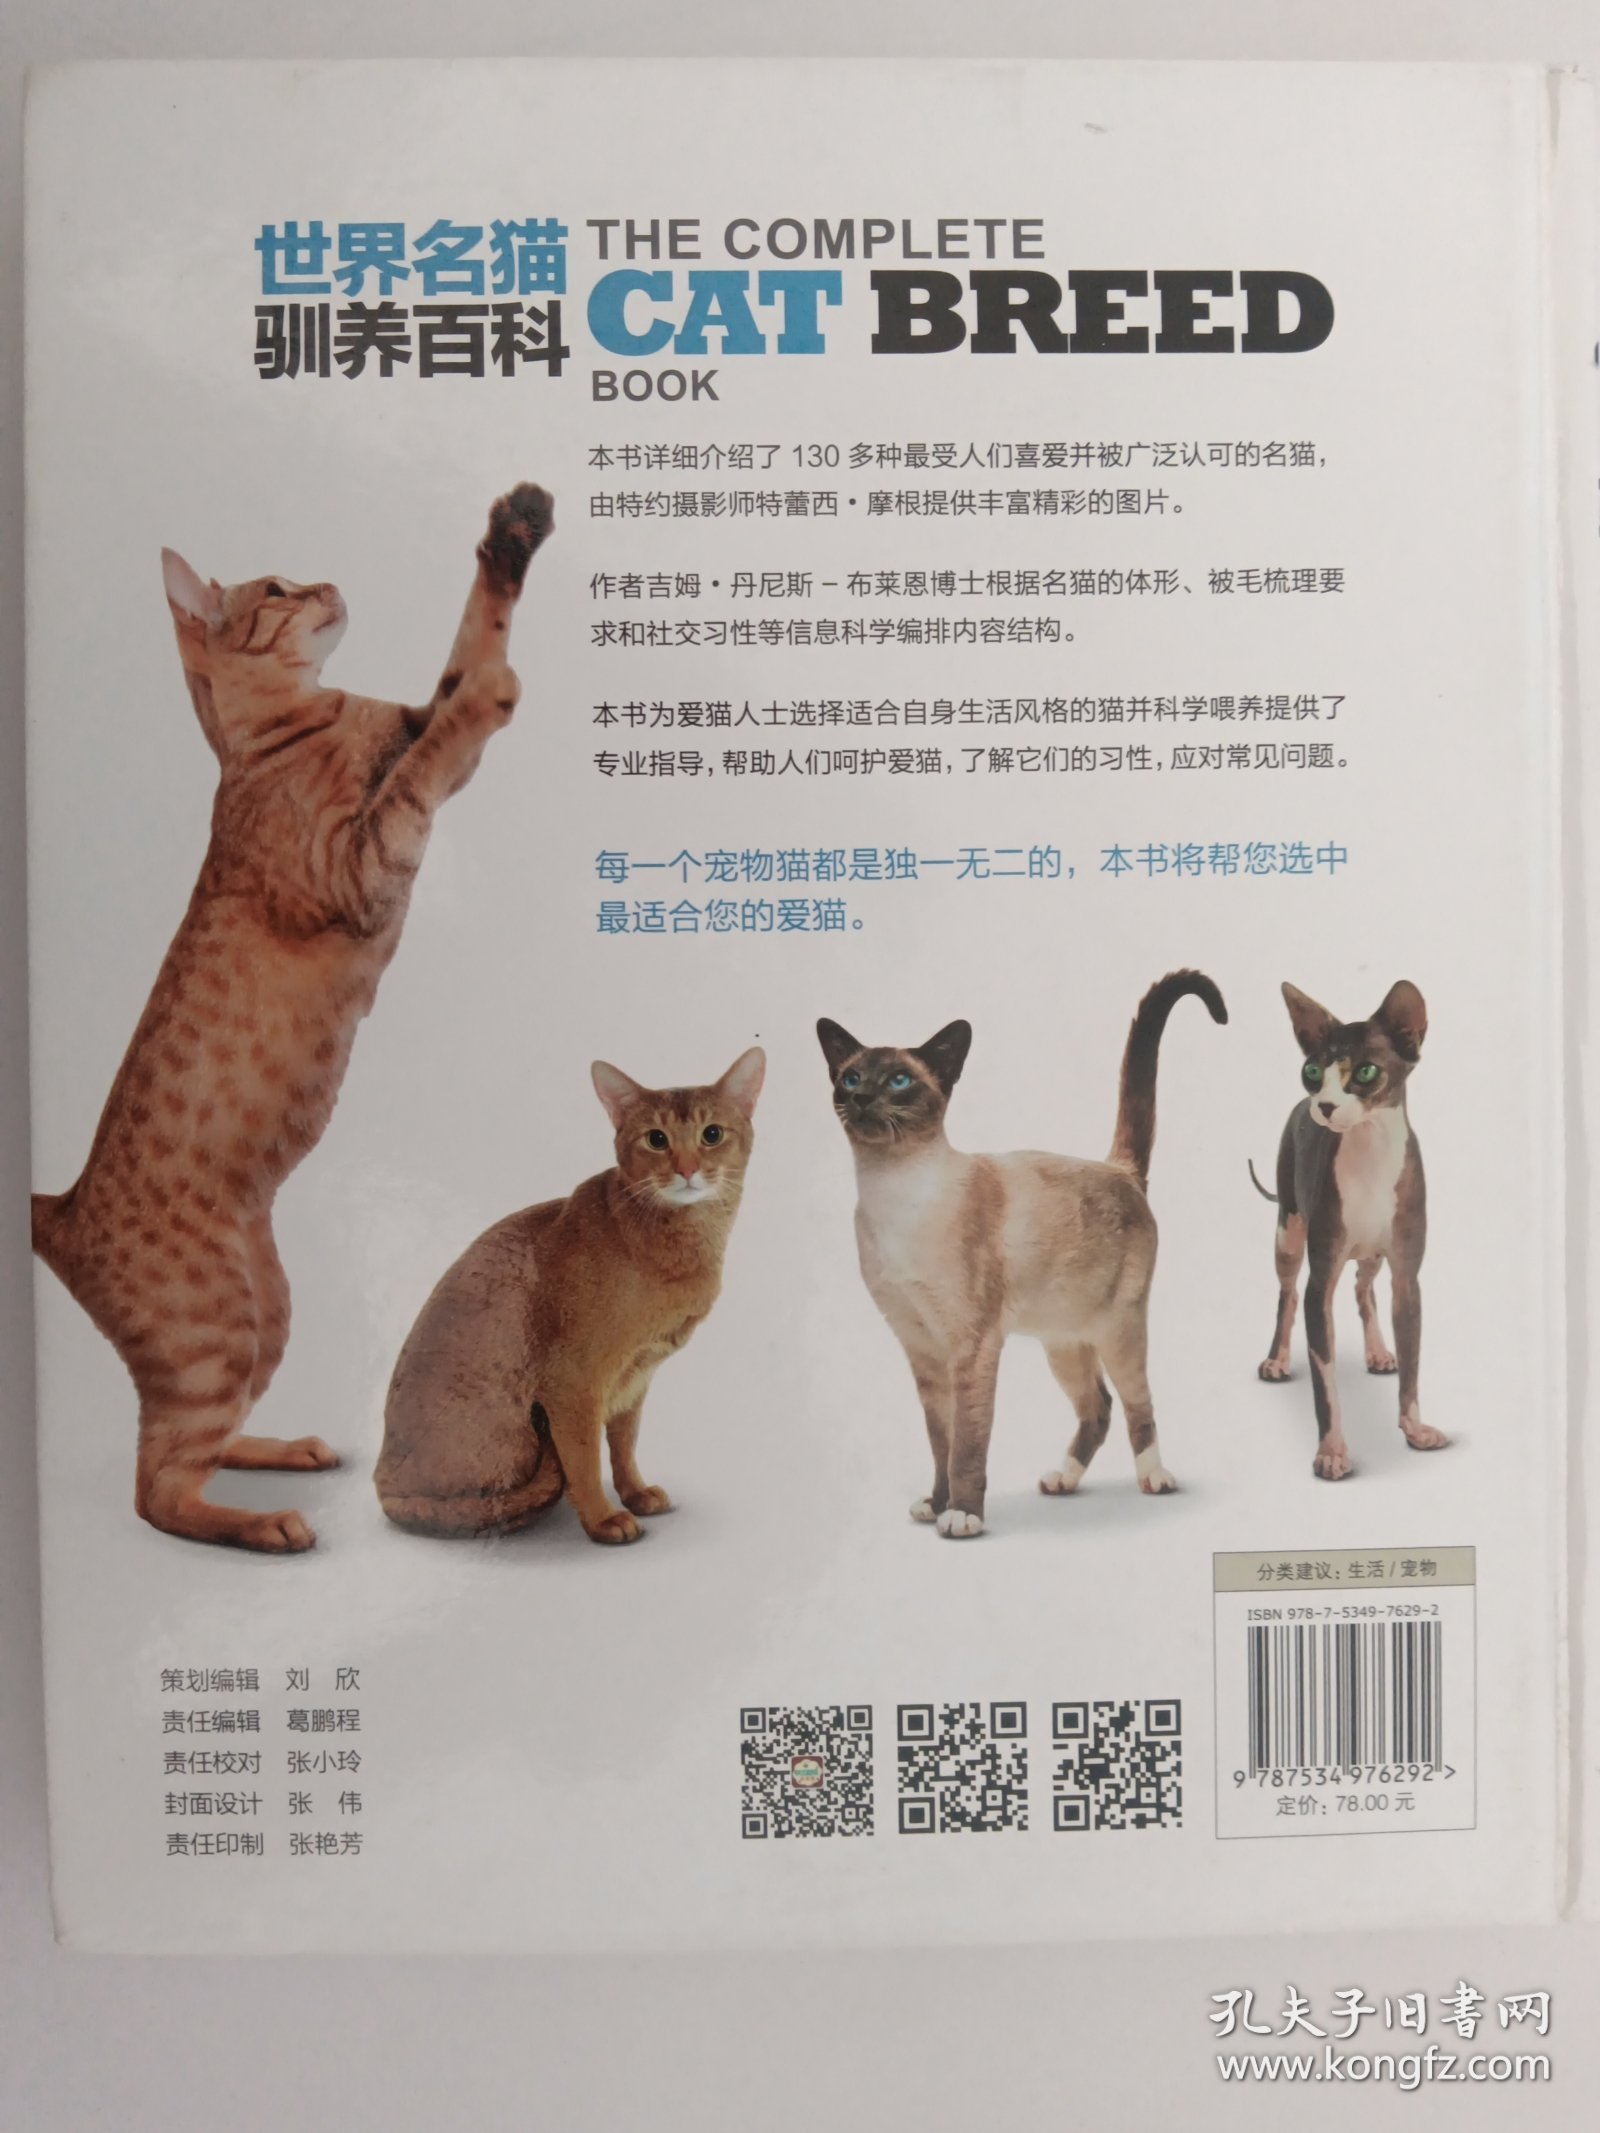 世界名猫训养百科 精装本